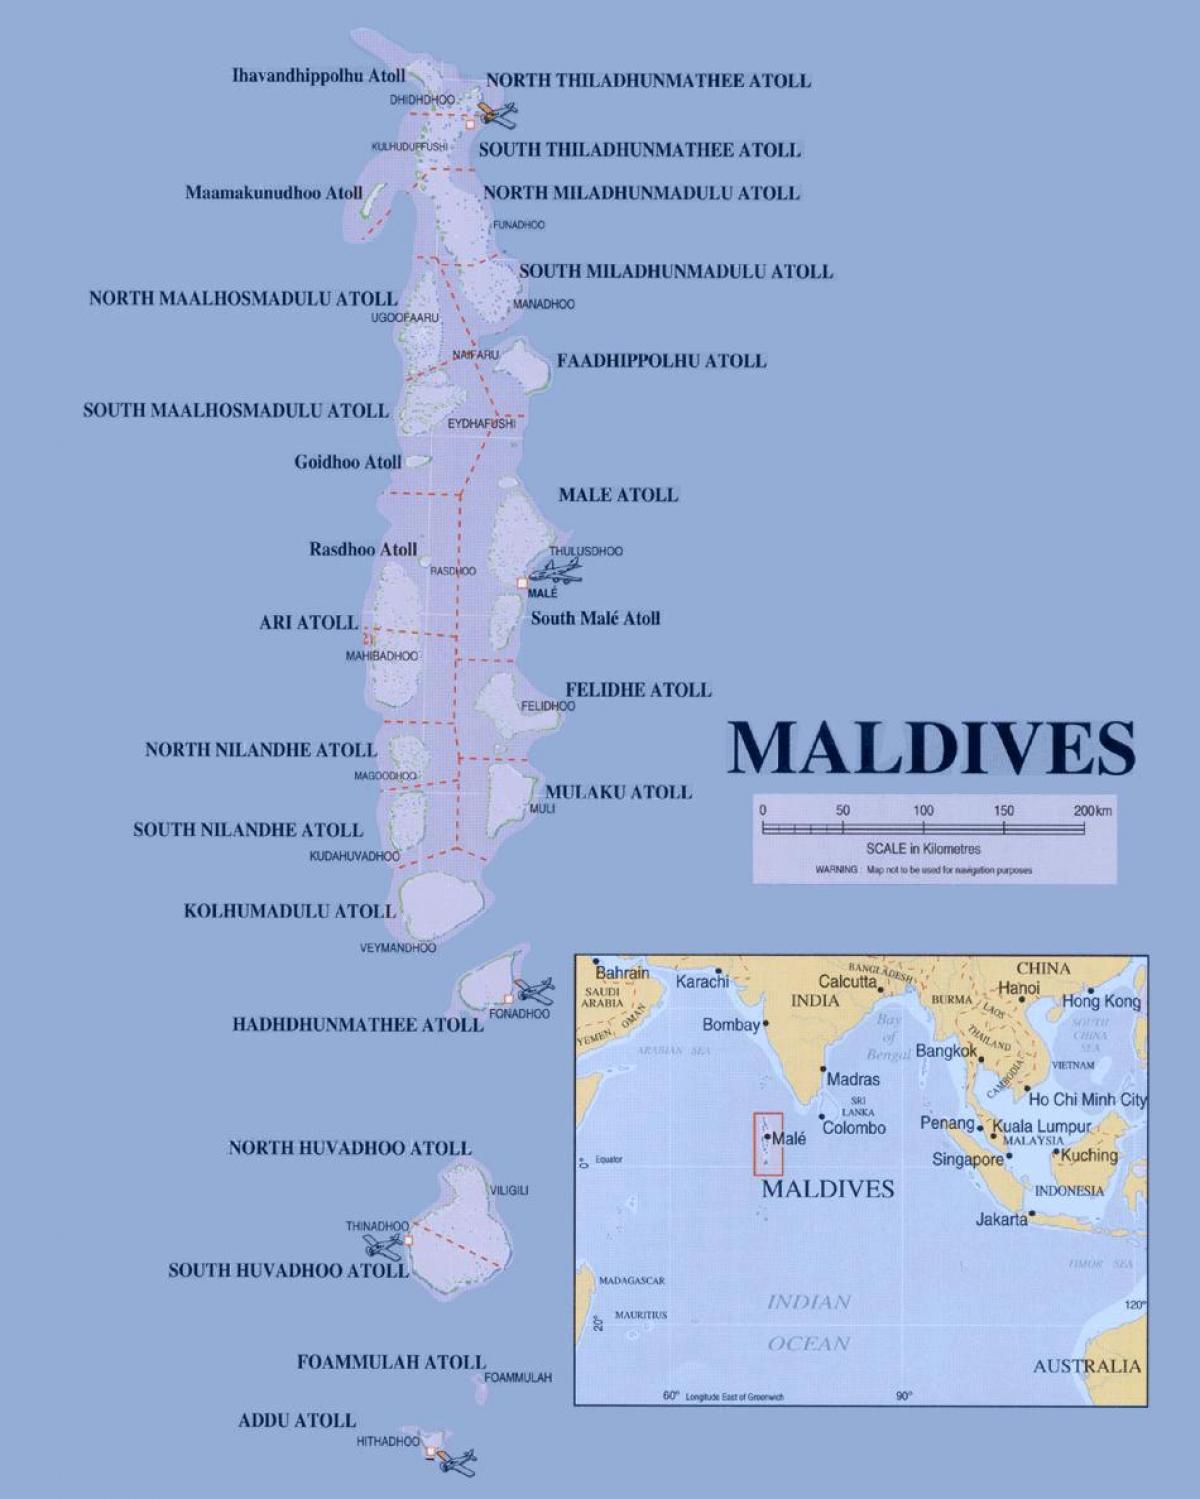 die Karte zeigt die Malediven